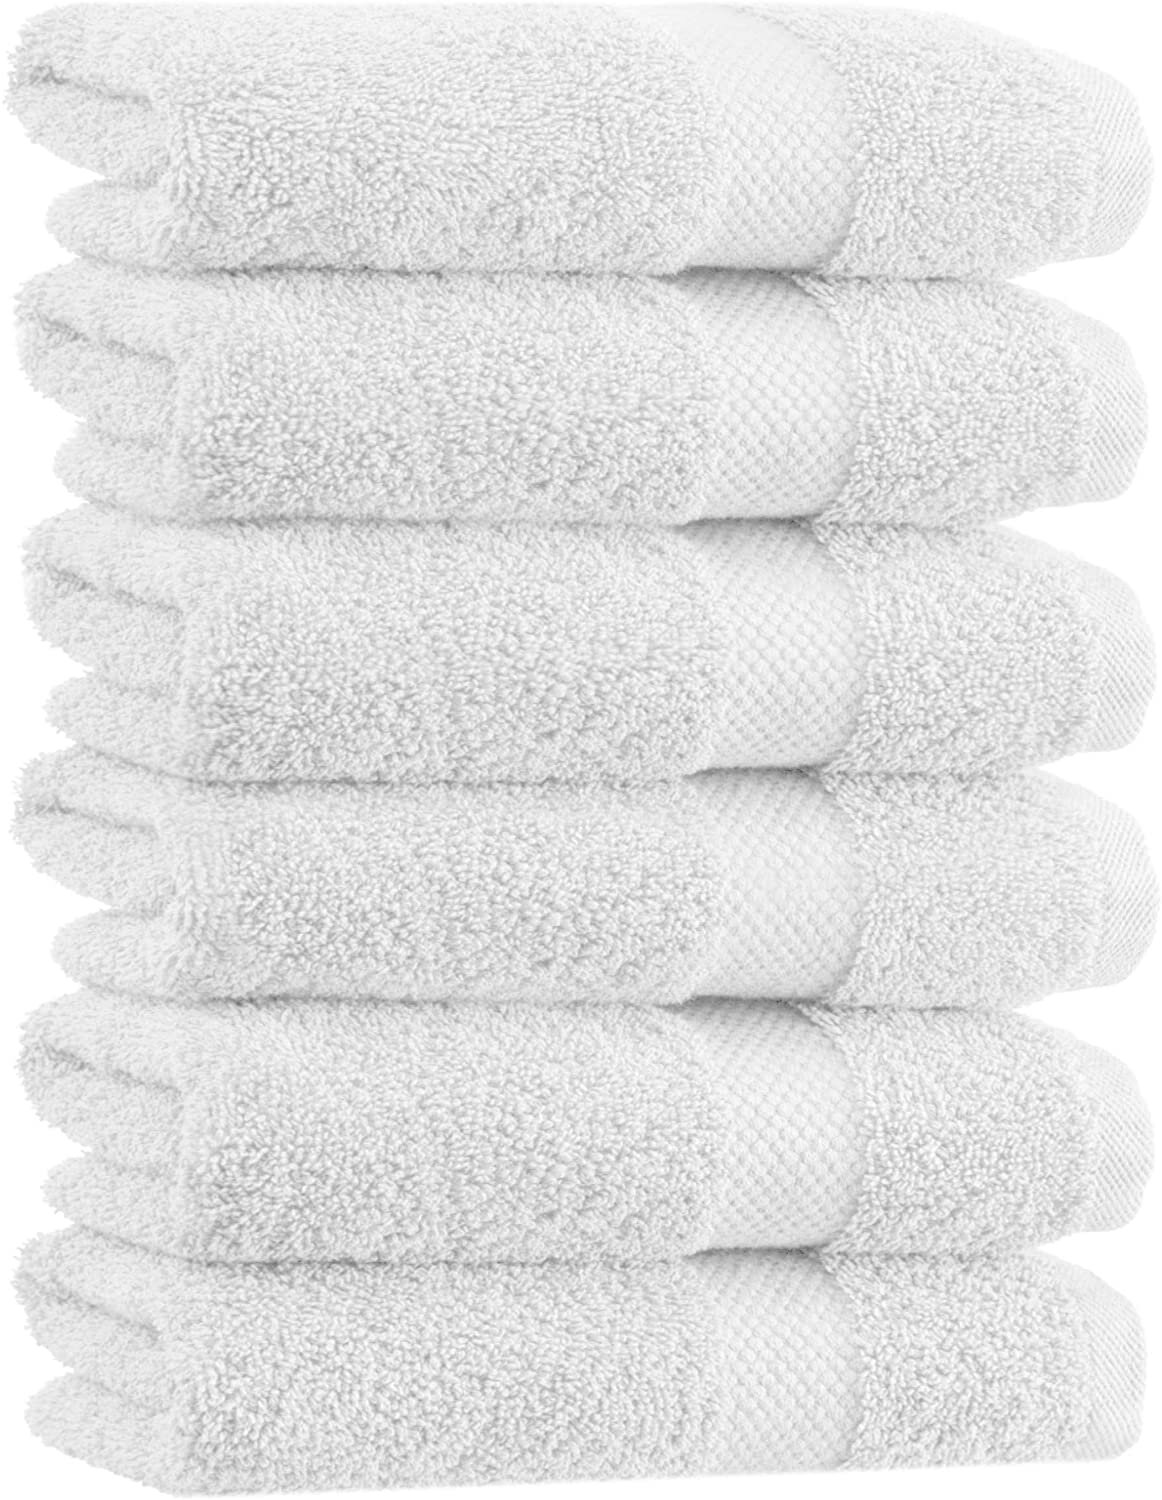 white towels.jpg